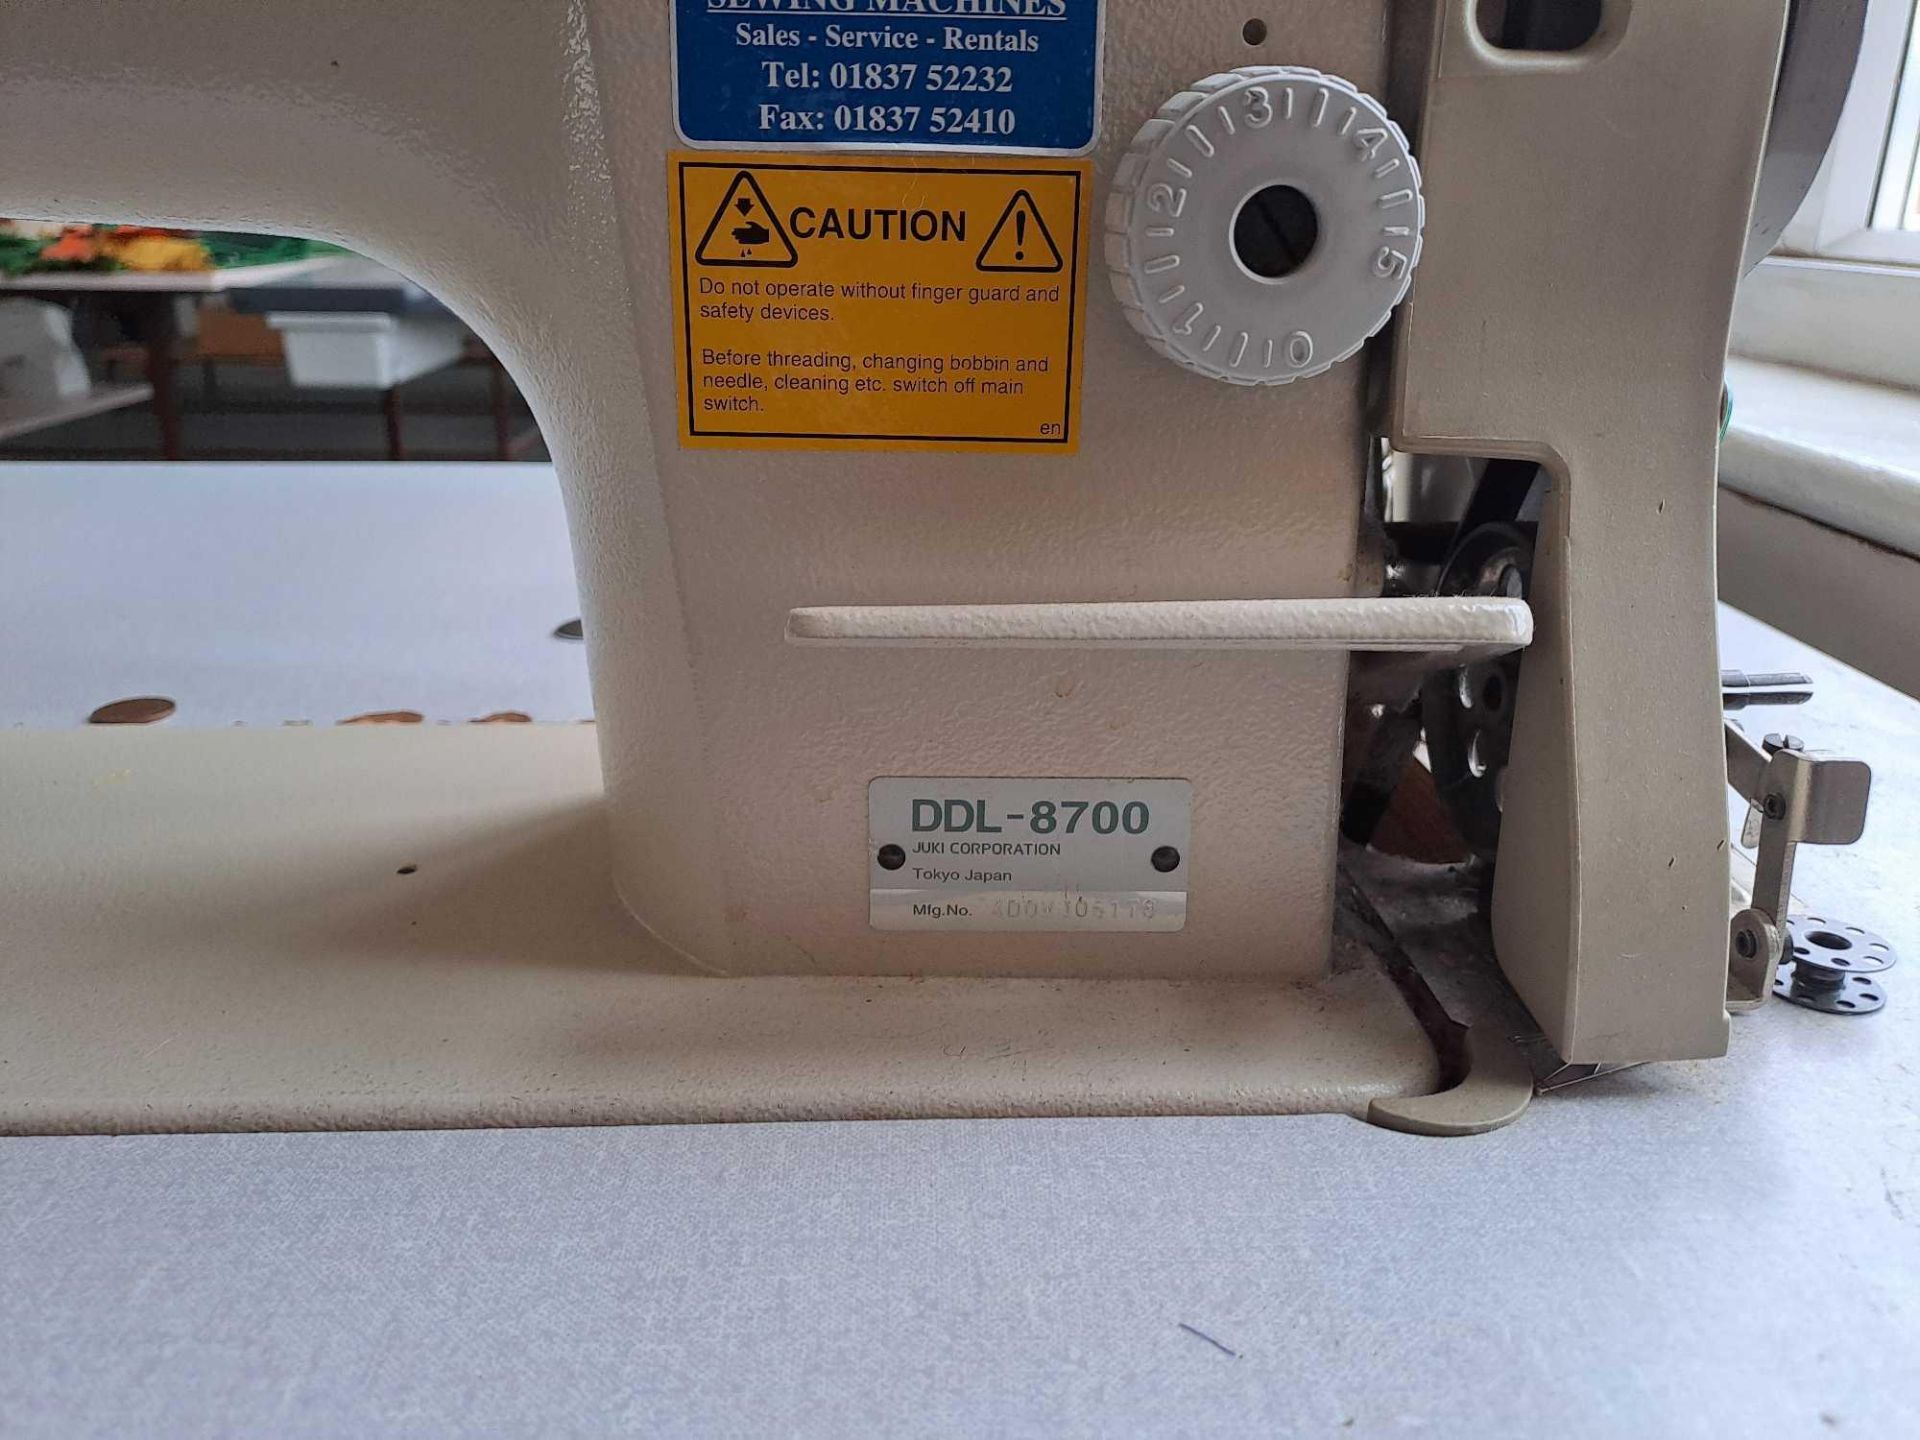 Juki DDL-8700 Sewing Machine - Image 3 of 5